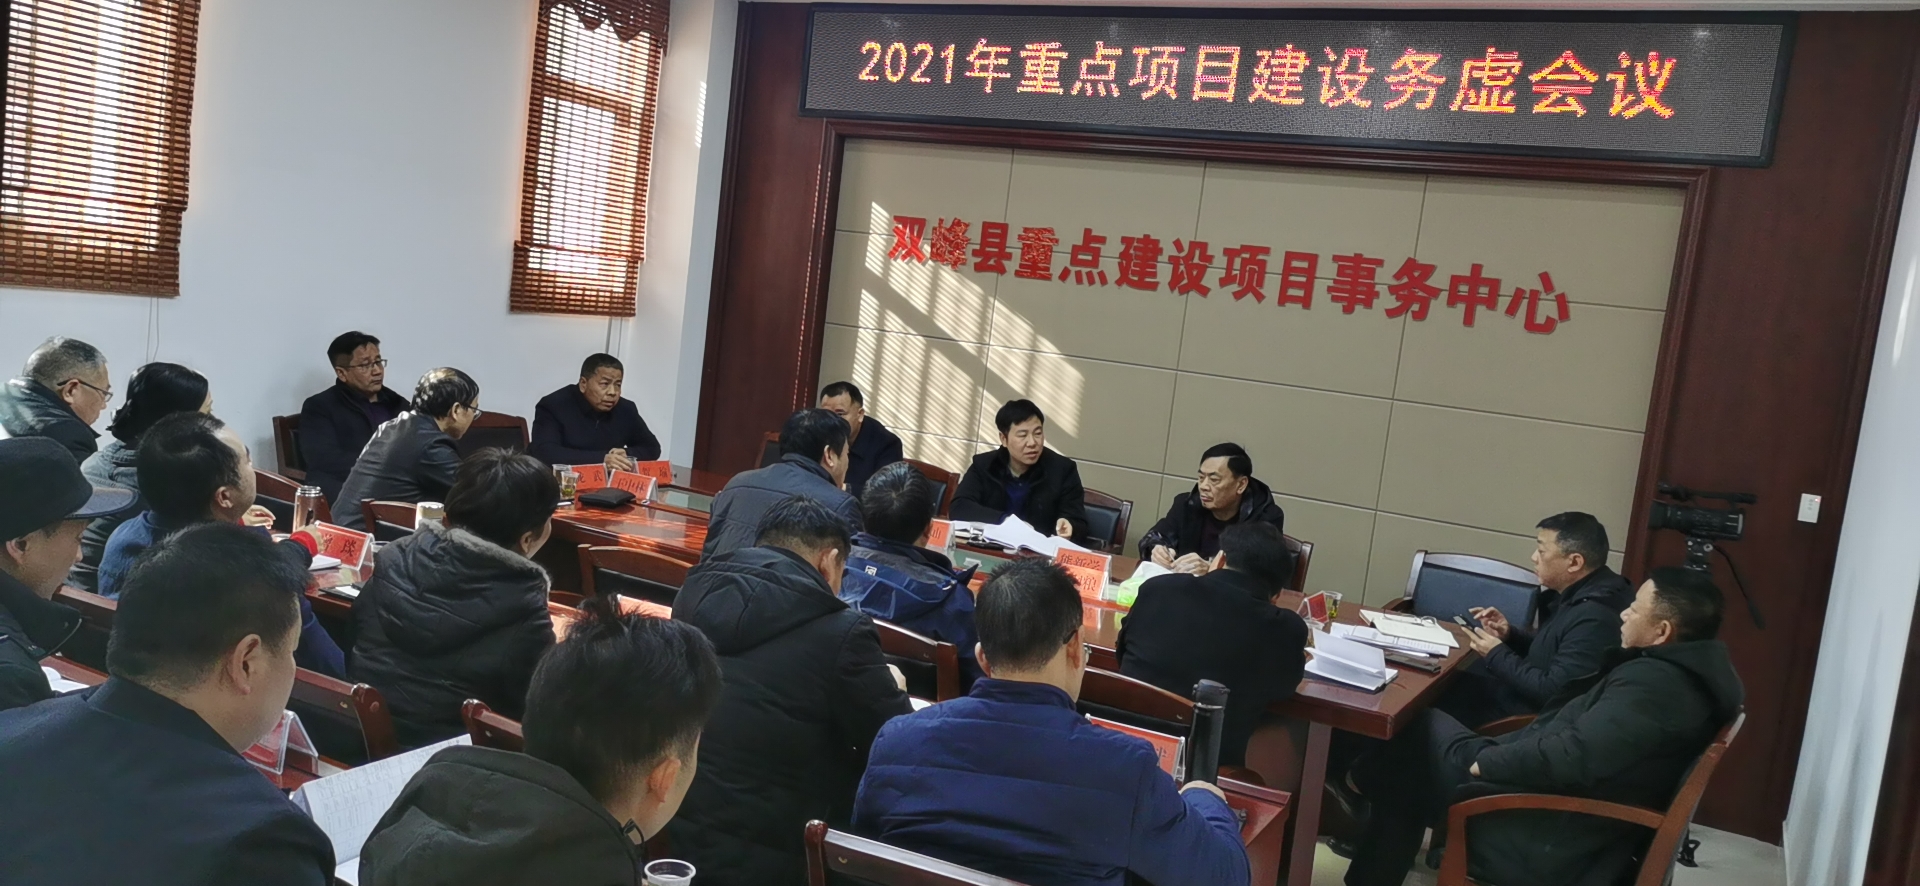 双峰县召开2021年重点项目建设务虚会